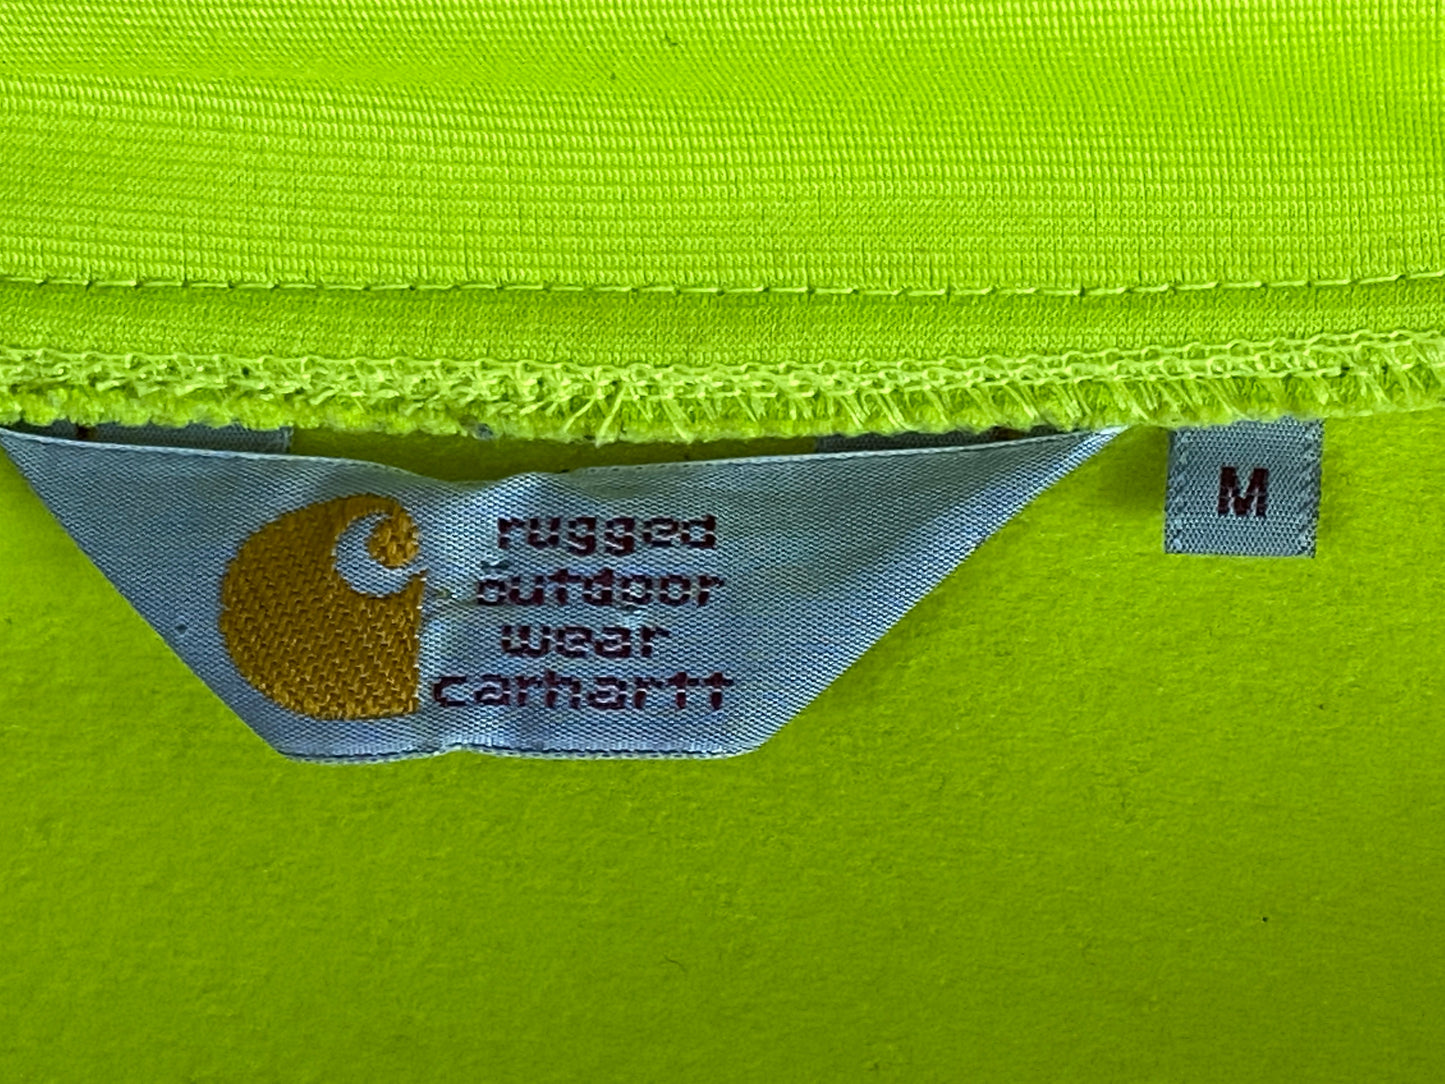 Carhartt Vintage Men's Track Jacket - Medium Green Polyester